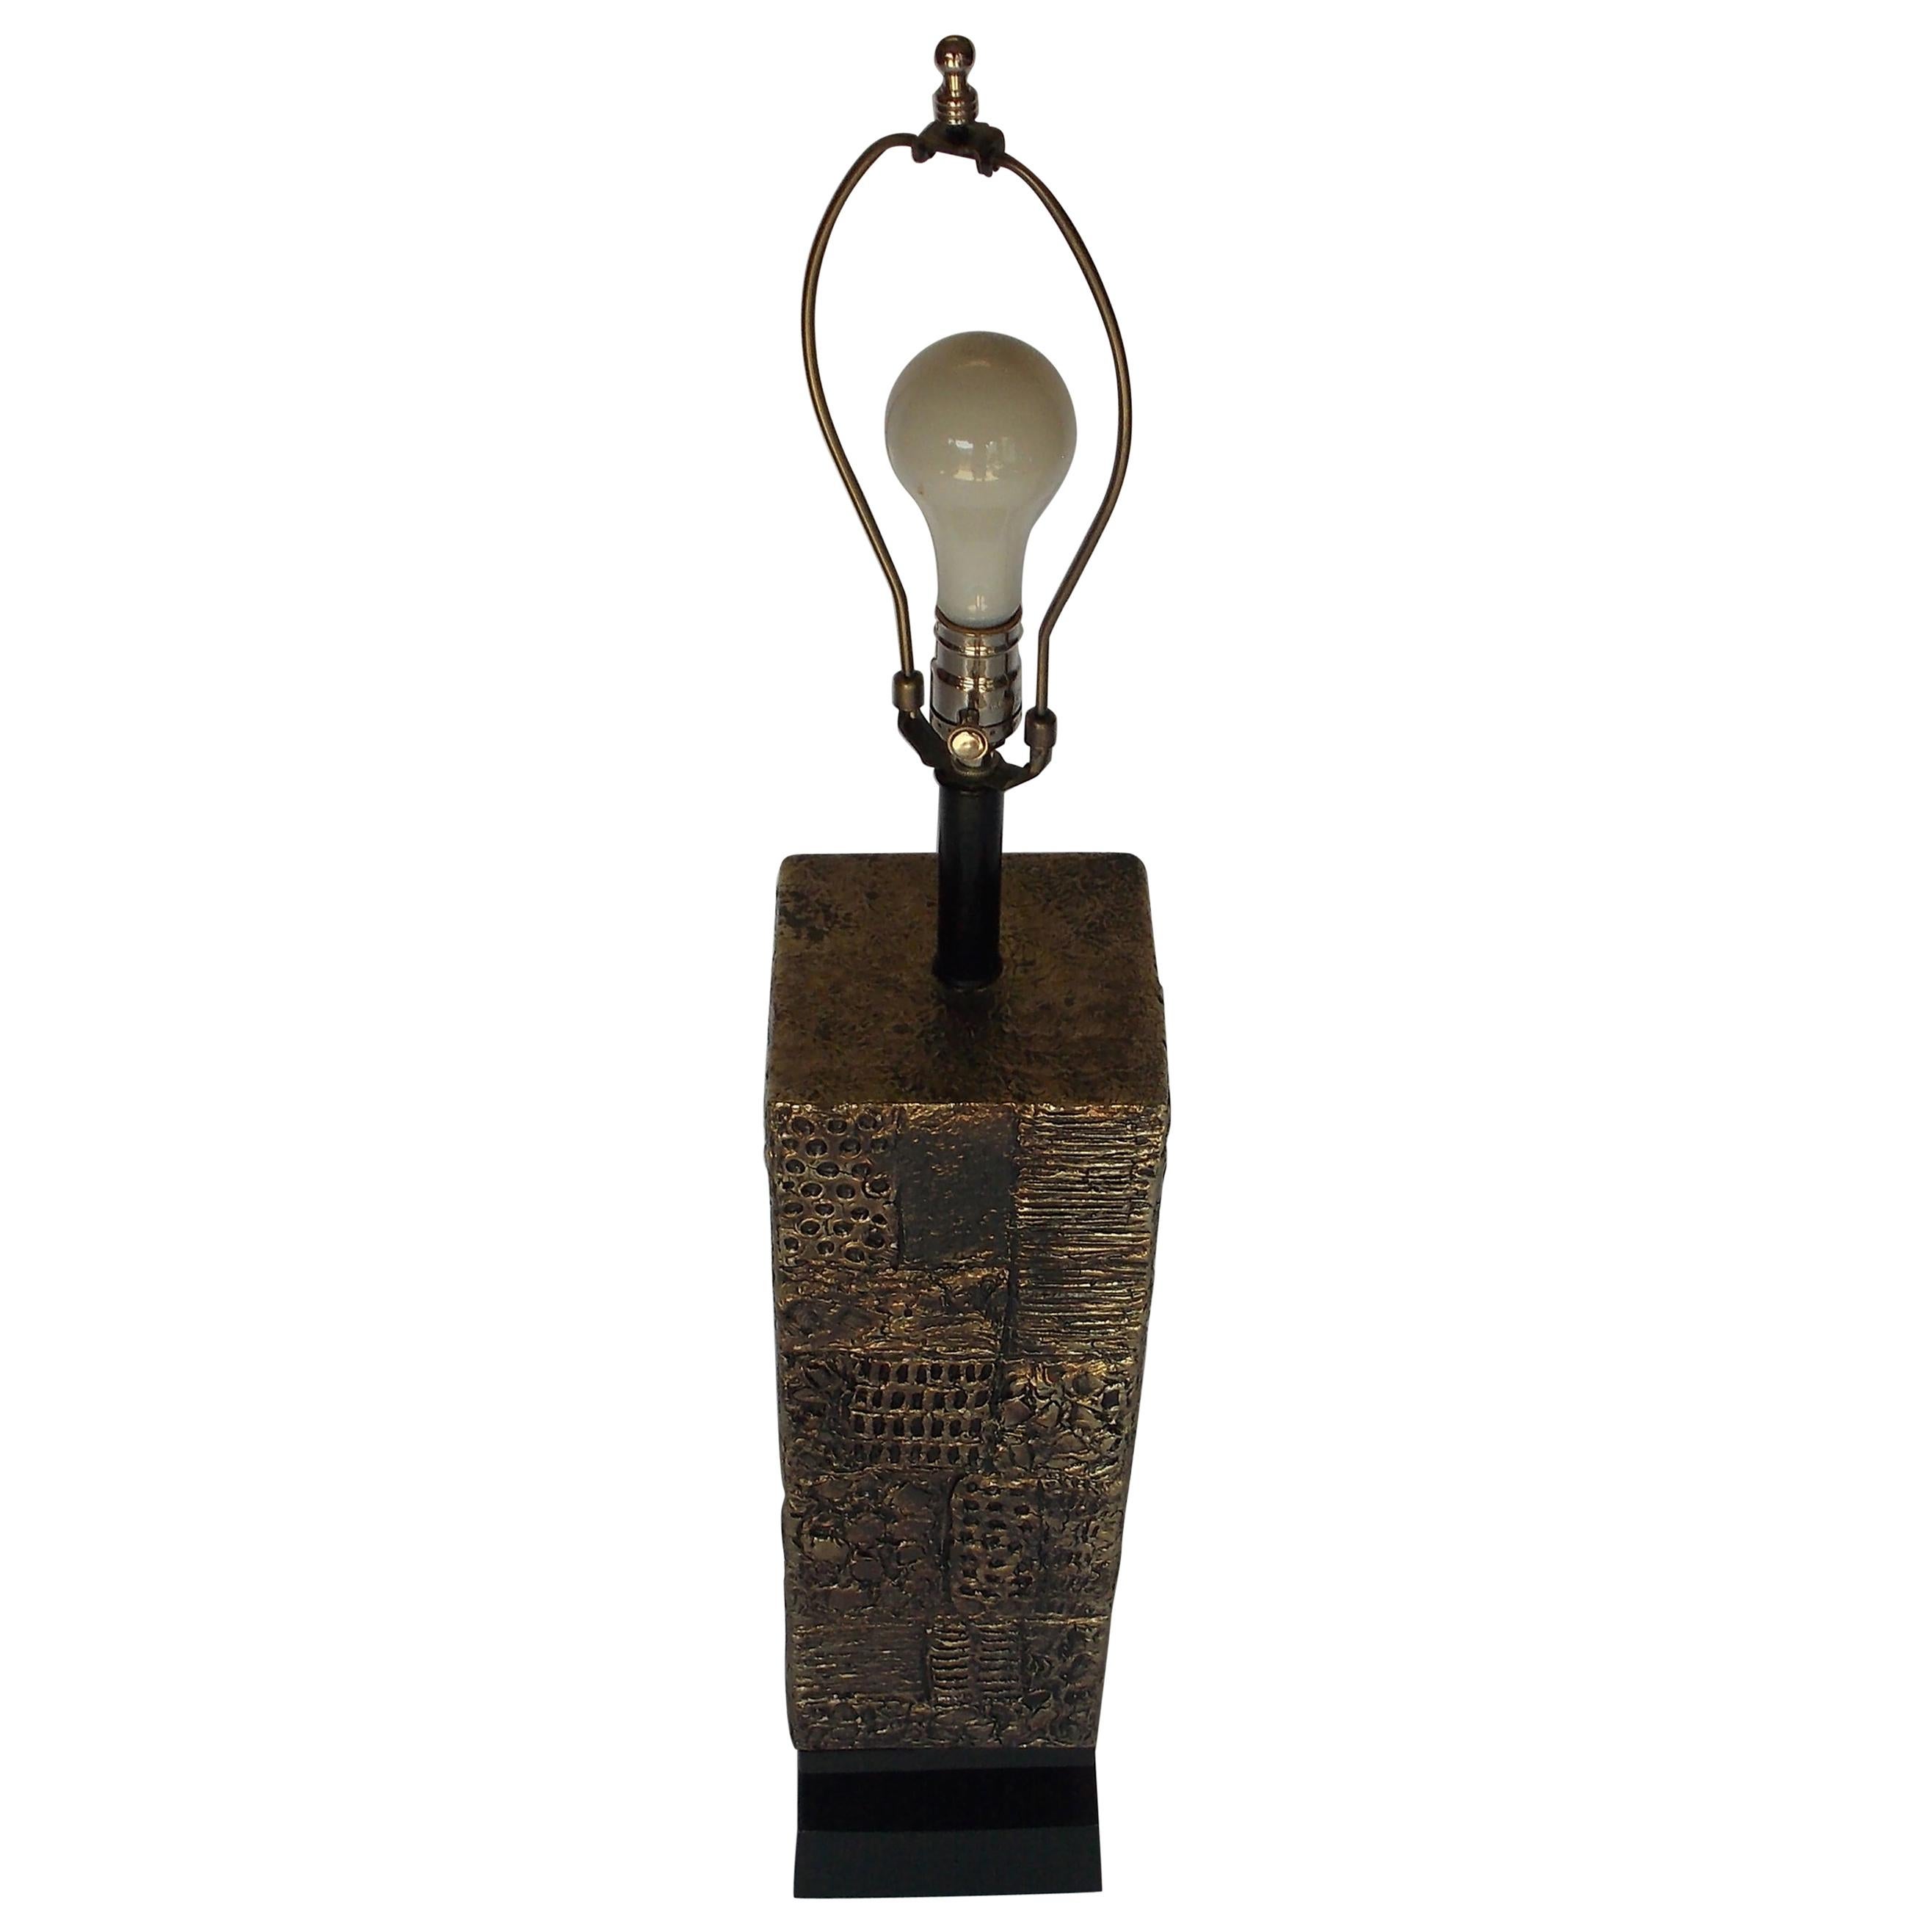 Lorbeer Lamp Company Metallic-Keramik-Lampe